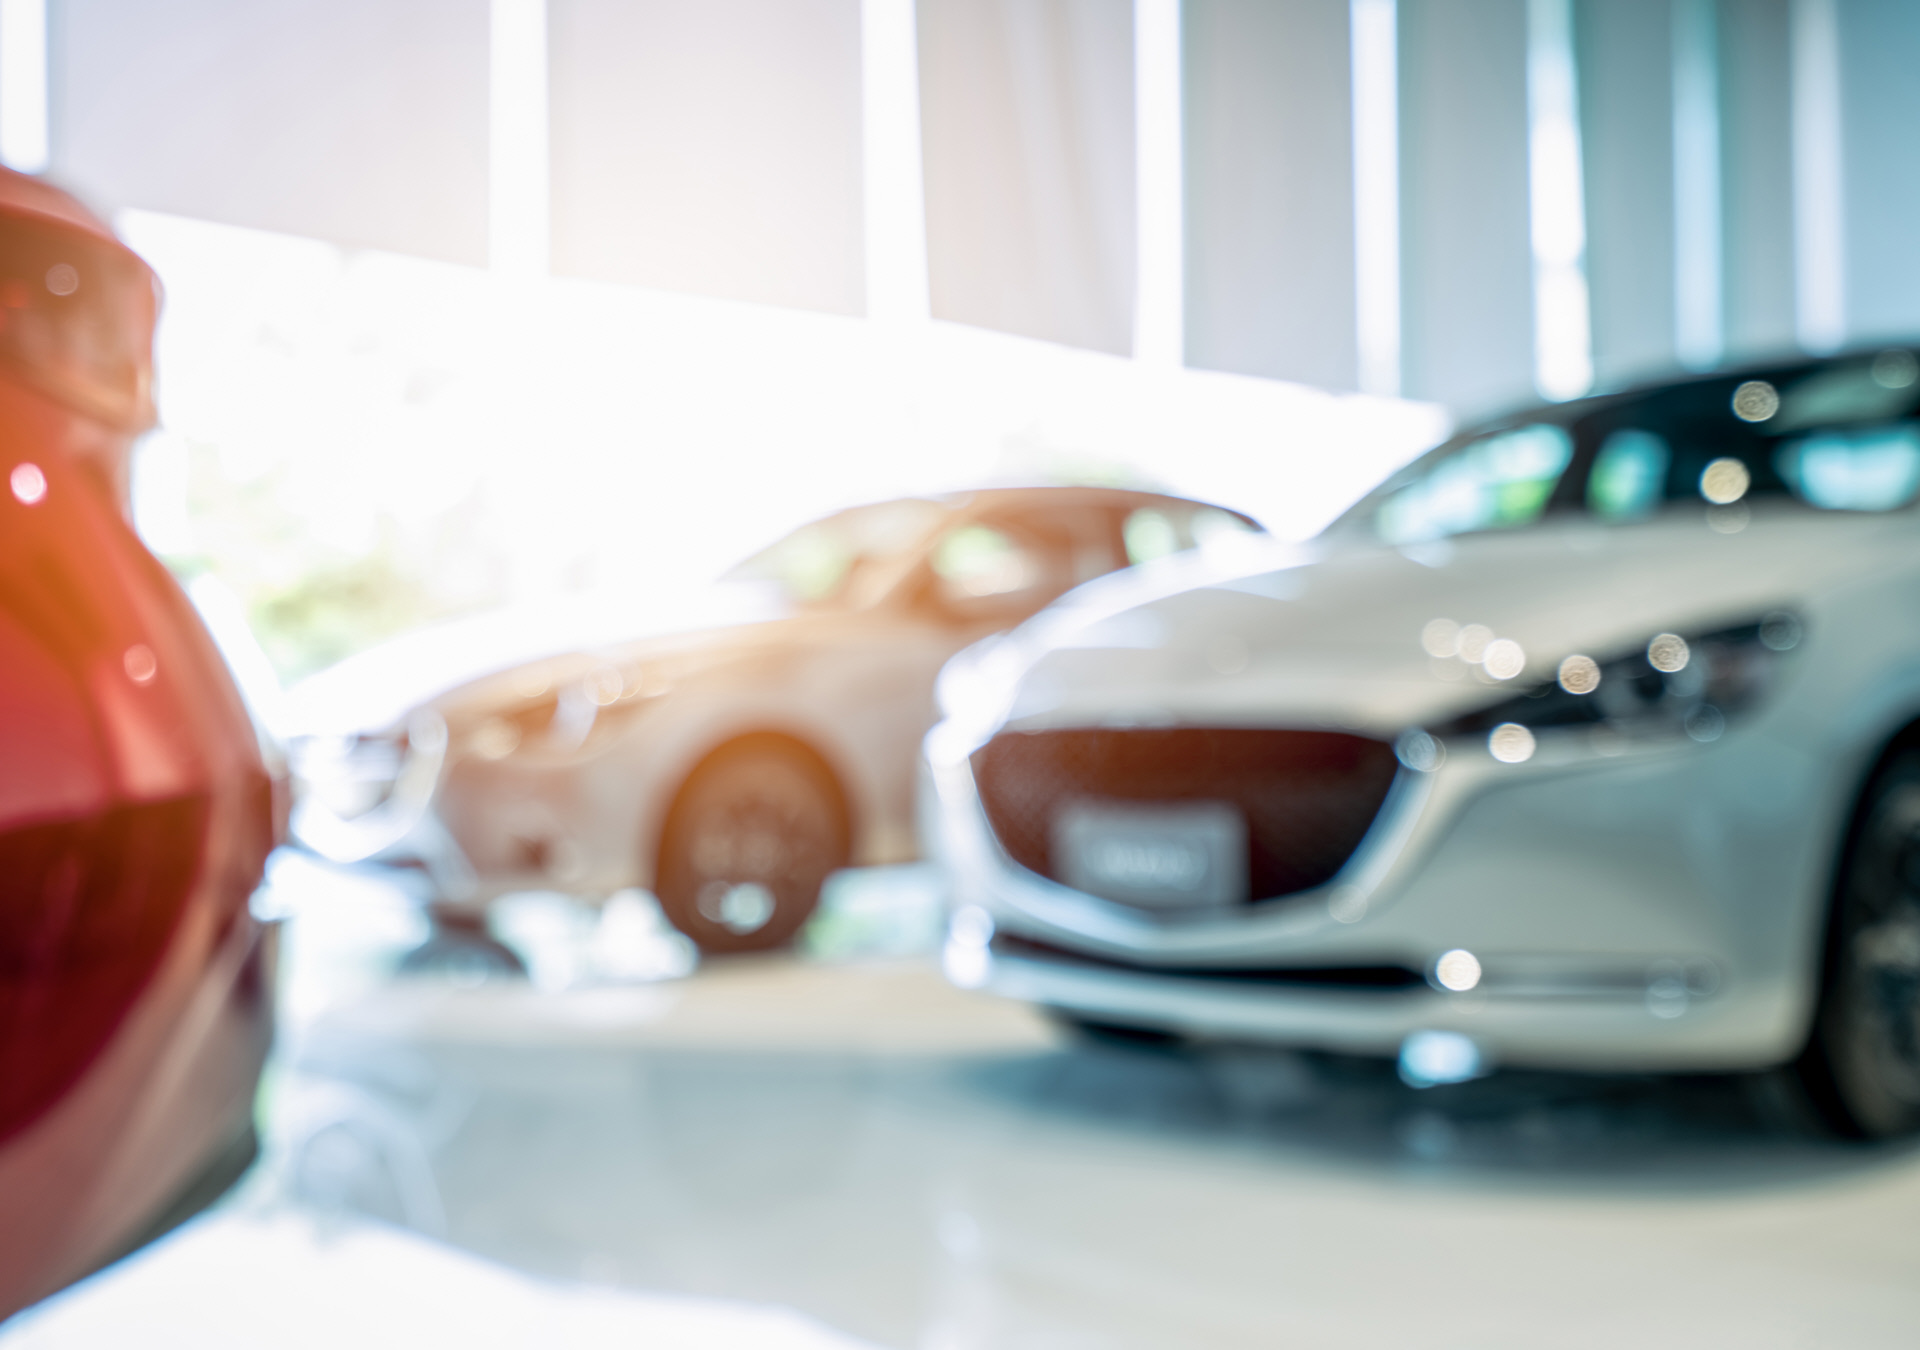 Incentivi decisivi per il mercato auto ed indispensabili per l’acquisto di veicoli elettrici